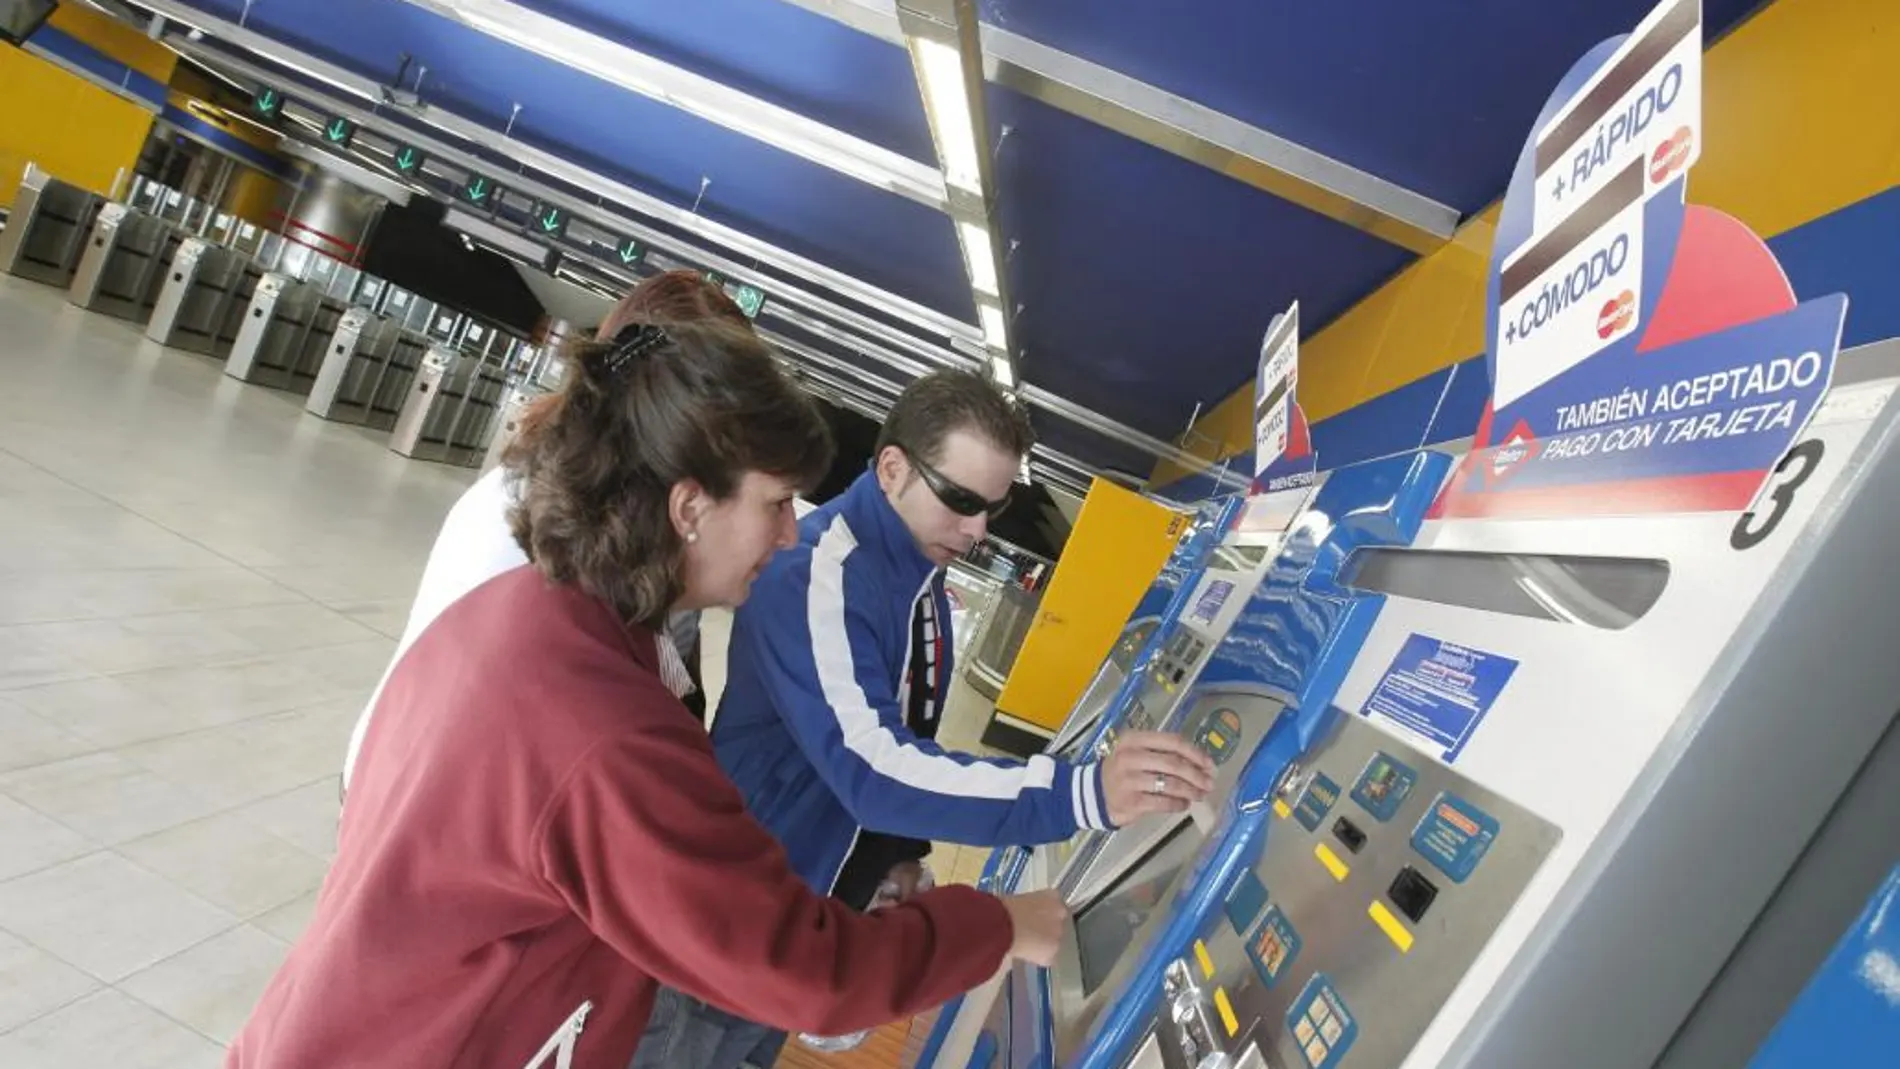 Metro eleva a 80 euros la multa por viajar sin billete